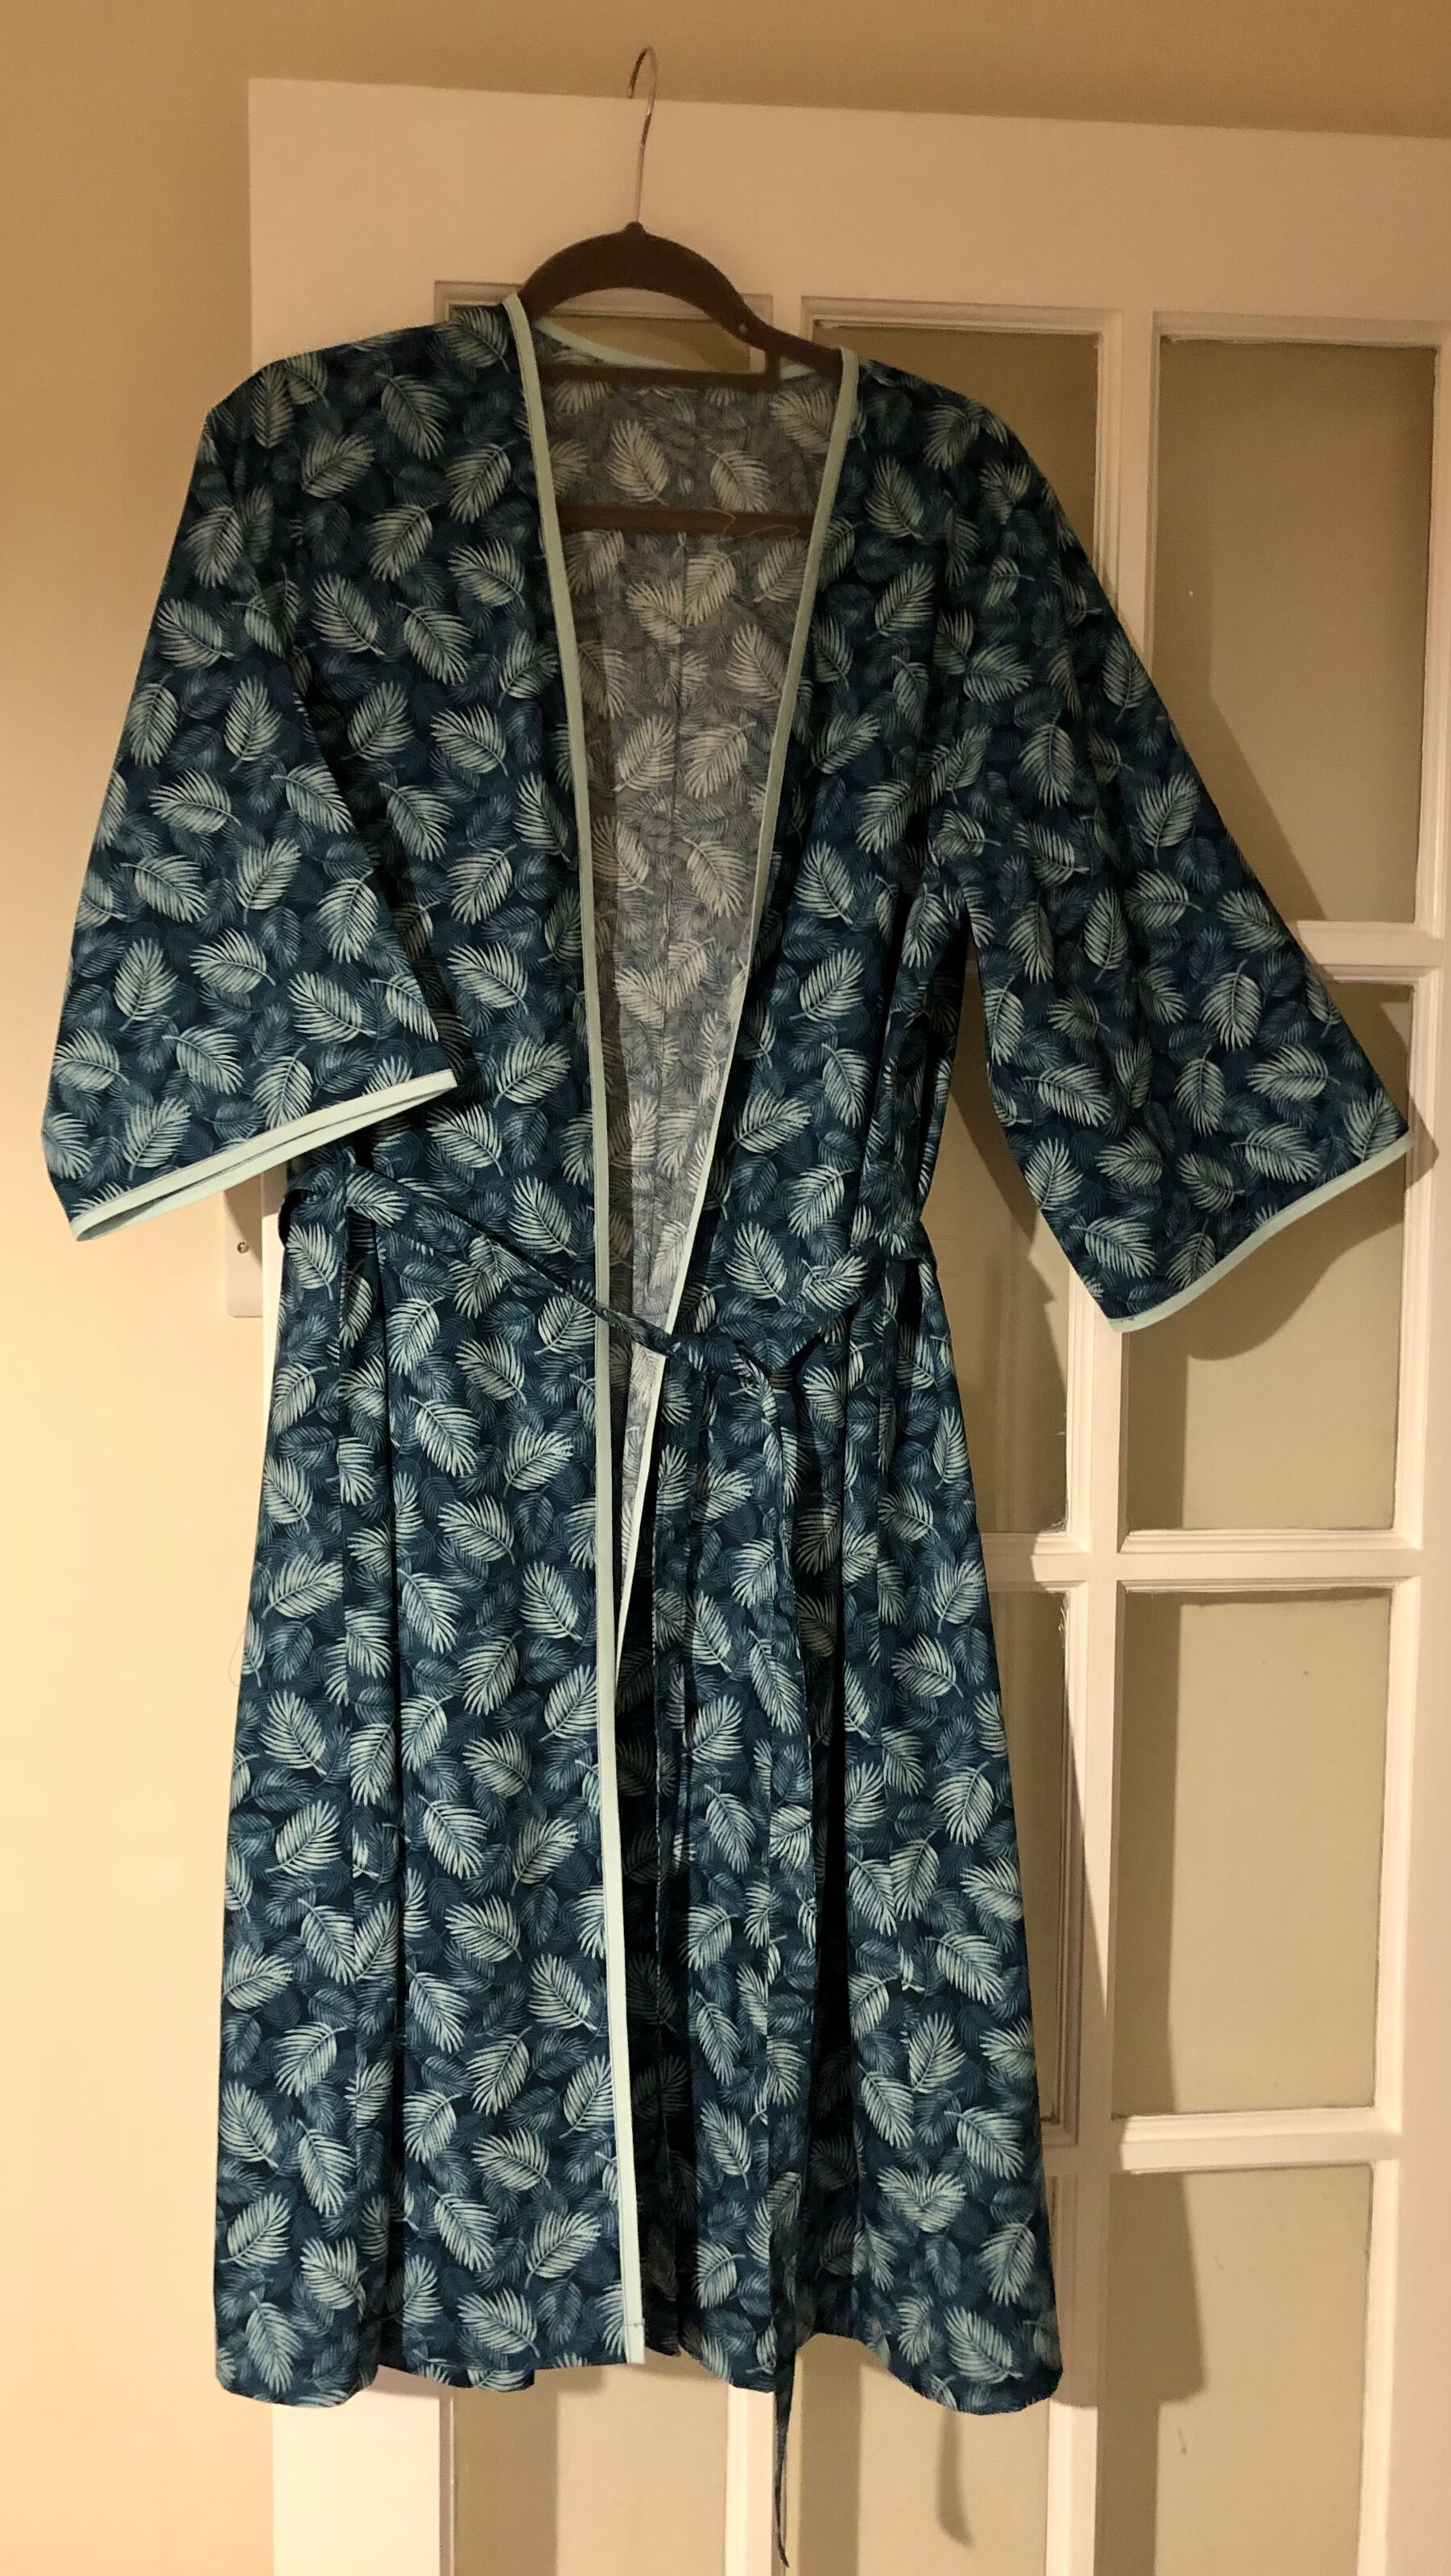 Palm Leaf Cotton Poplin Dress Fabric | Poplin Print - Maui - Teal